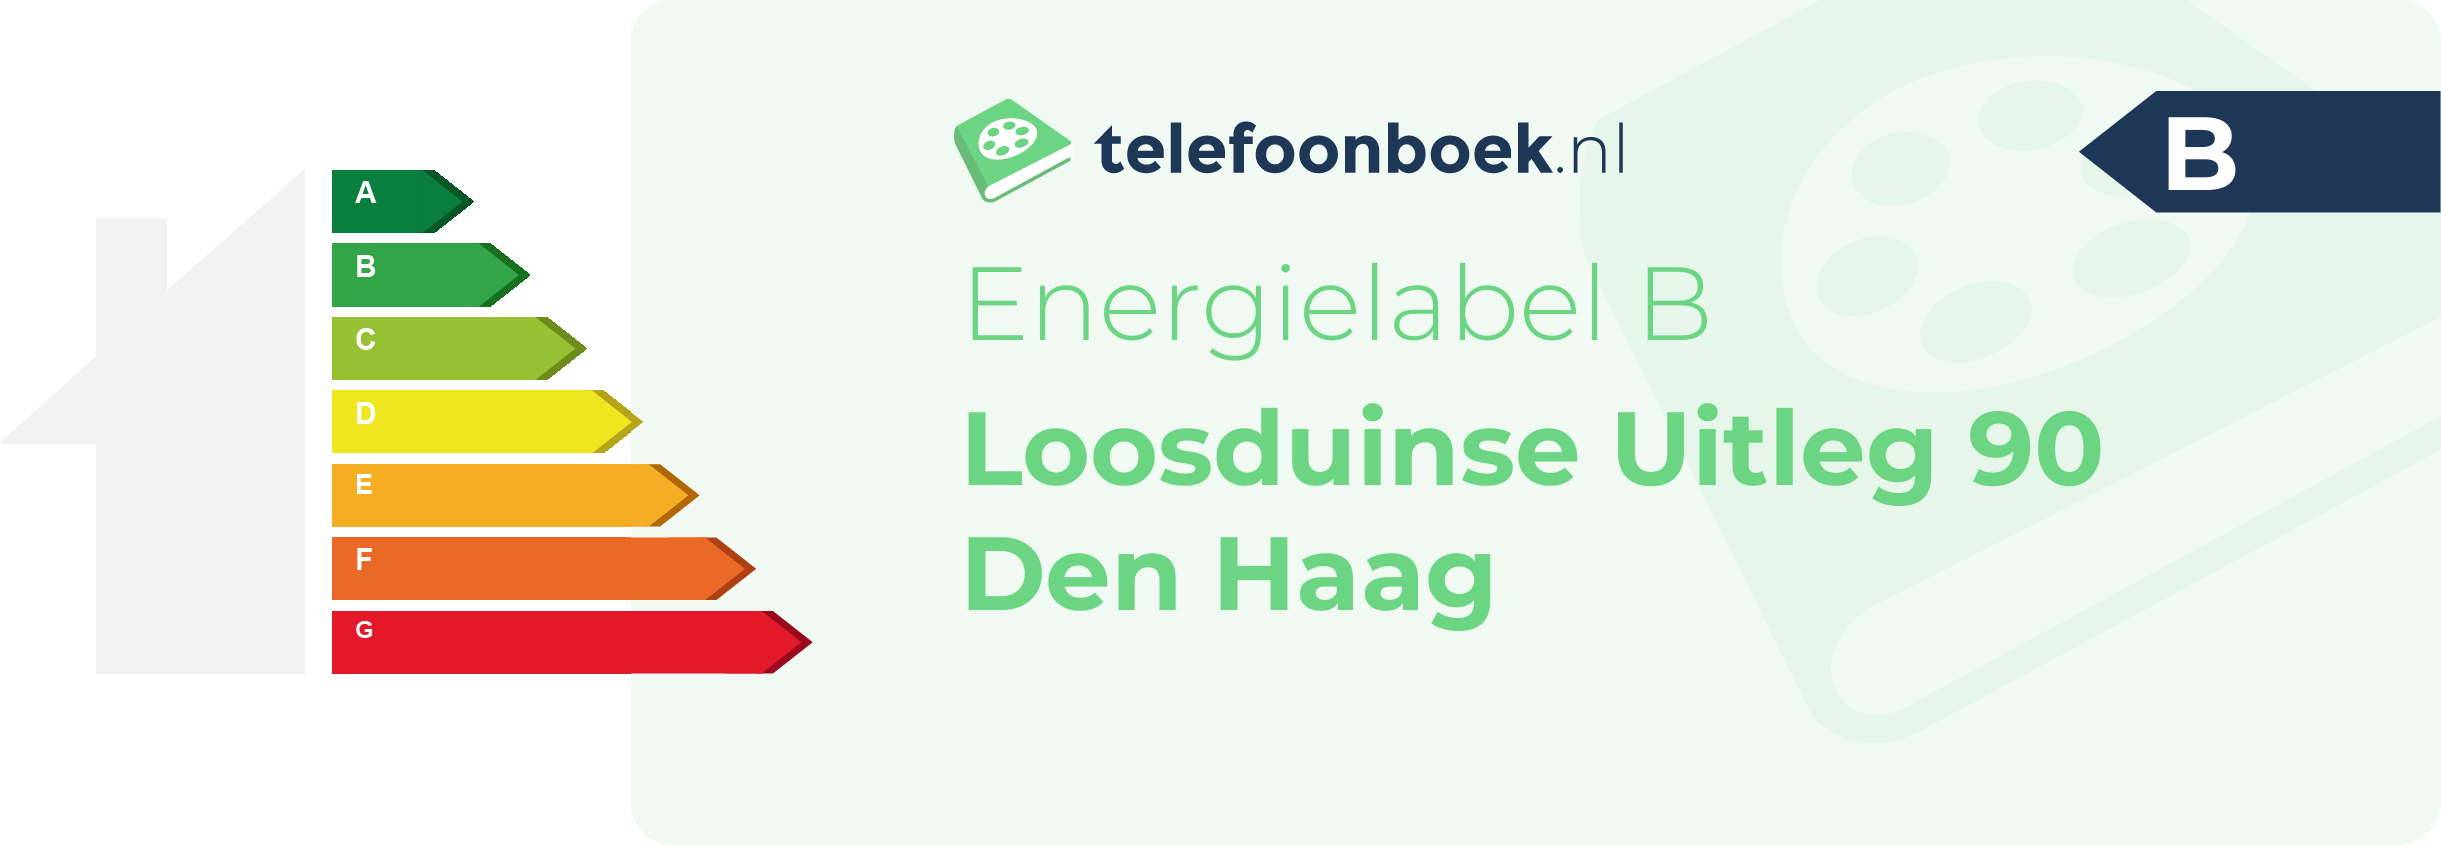 Energielabel Loosduinse Uitleg 90 Den Haag